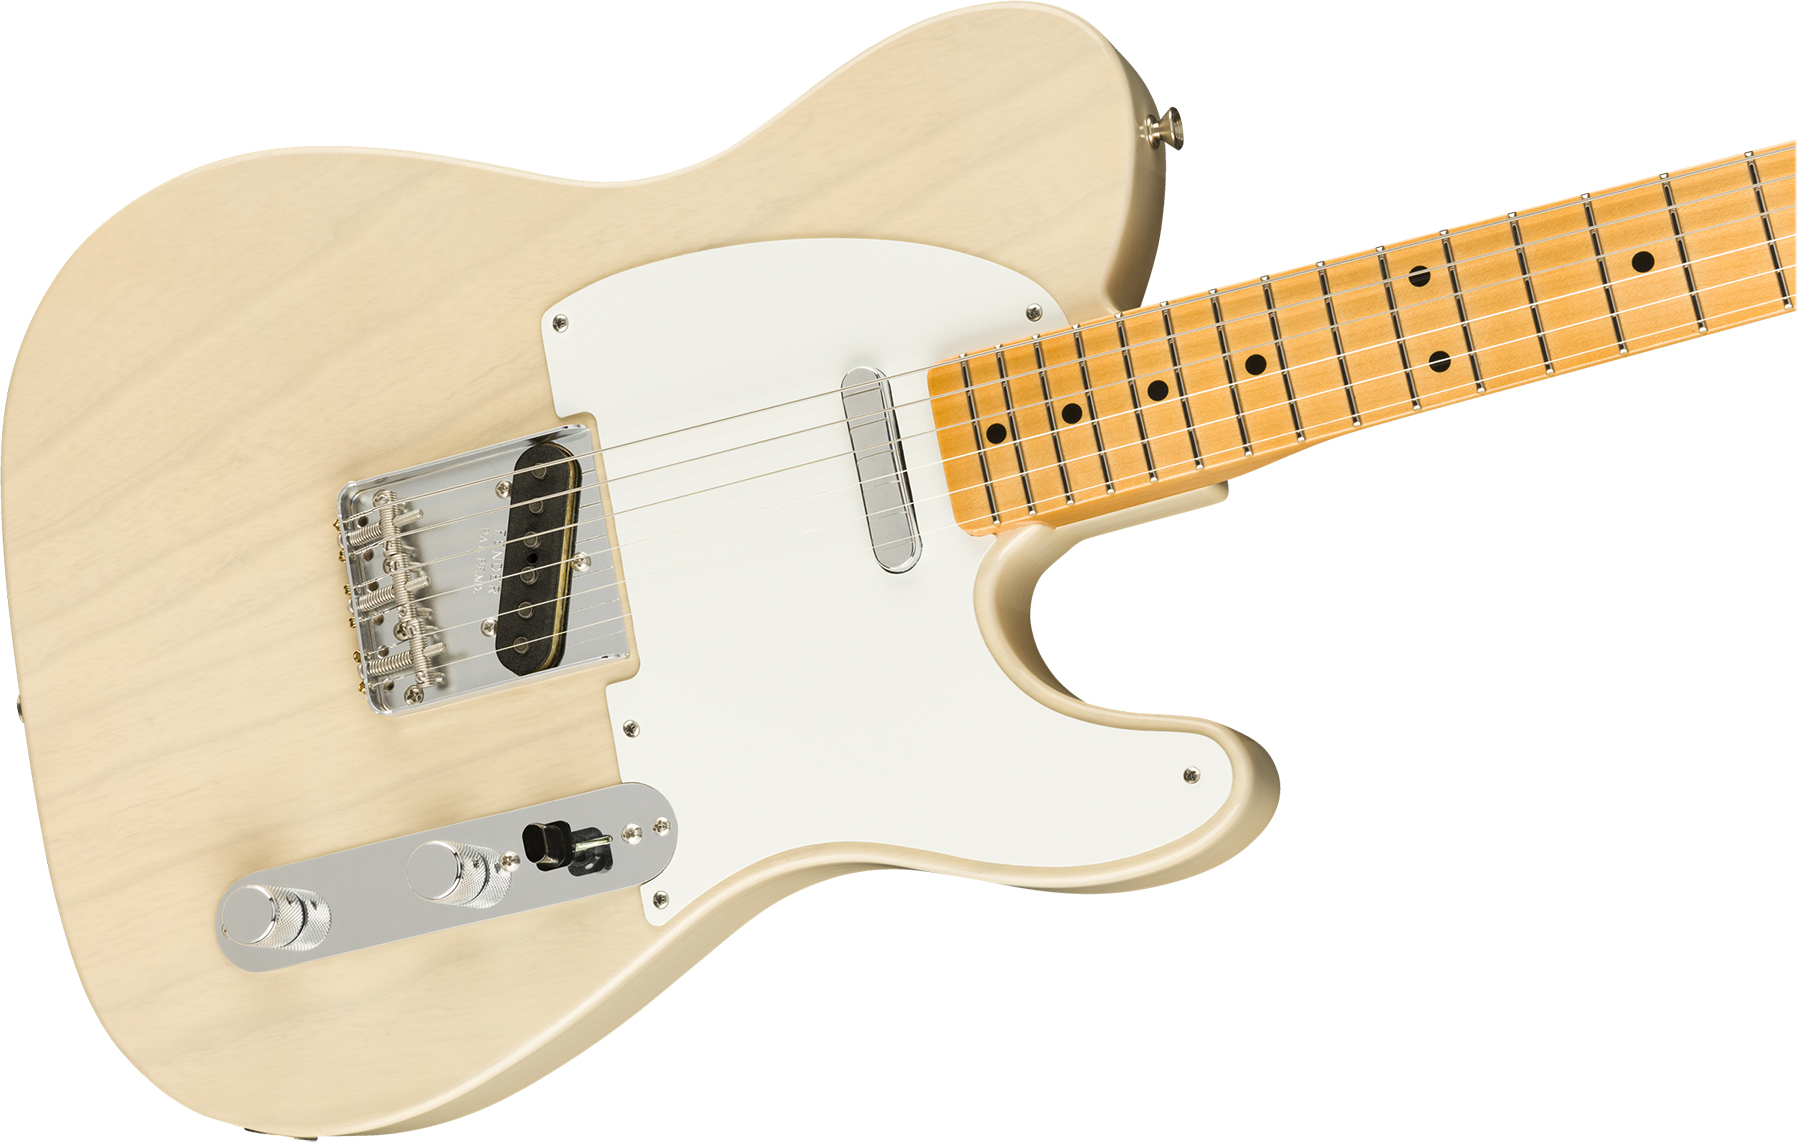 Fender Custom Shop Tele Vintage Custom 1958 Top Load Ltd Mn - Nos Aged White Blonde - Televorm elektrische gitaar - Variation 2